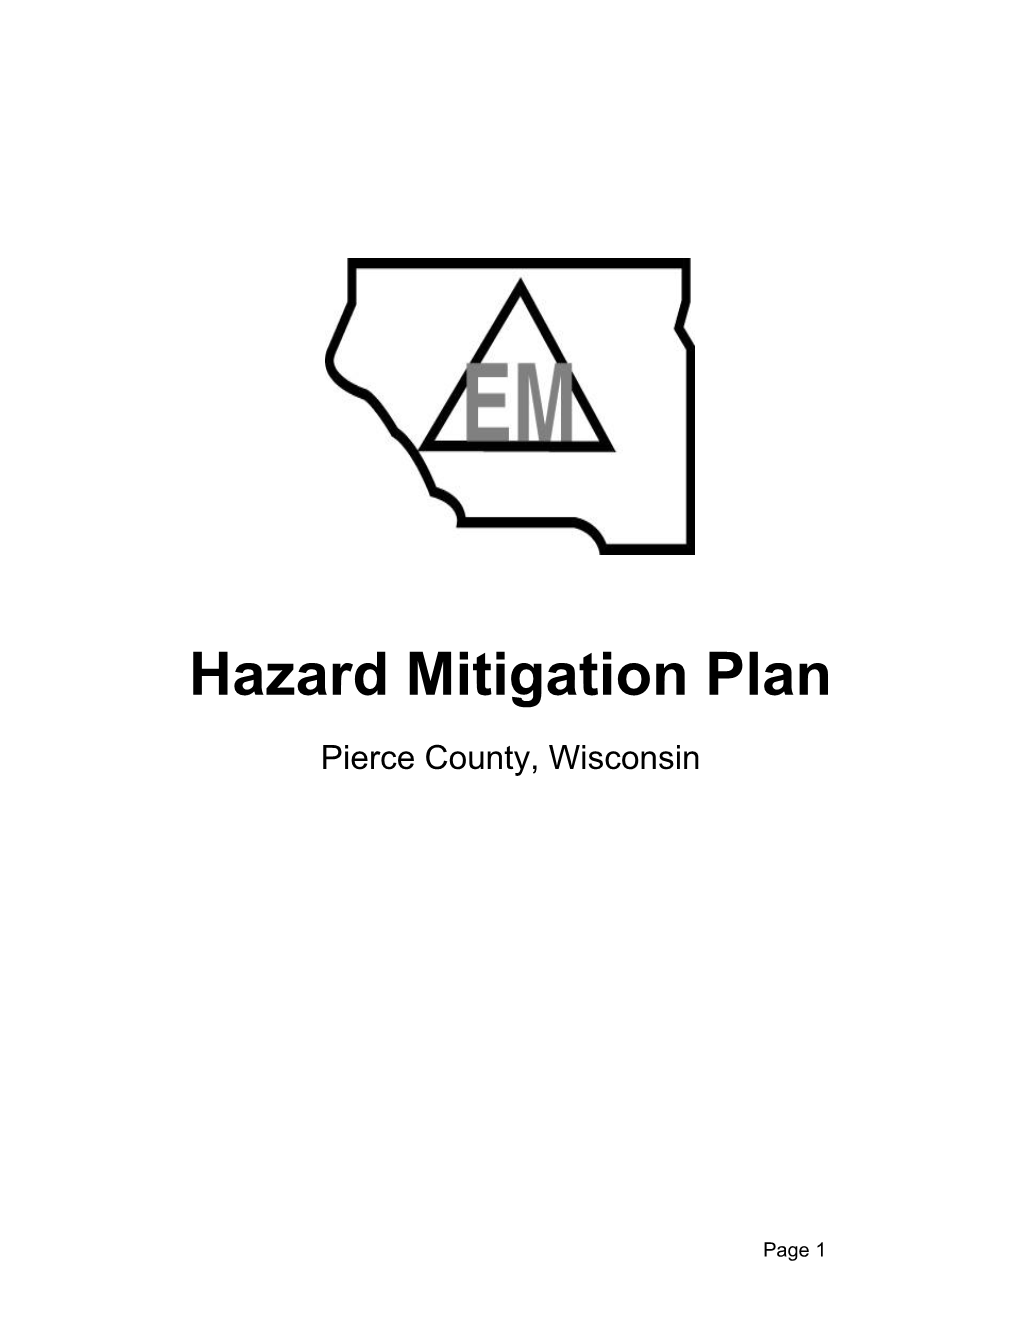 Pierce County Hazard Mitigation Plan